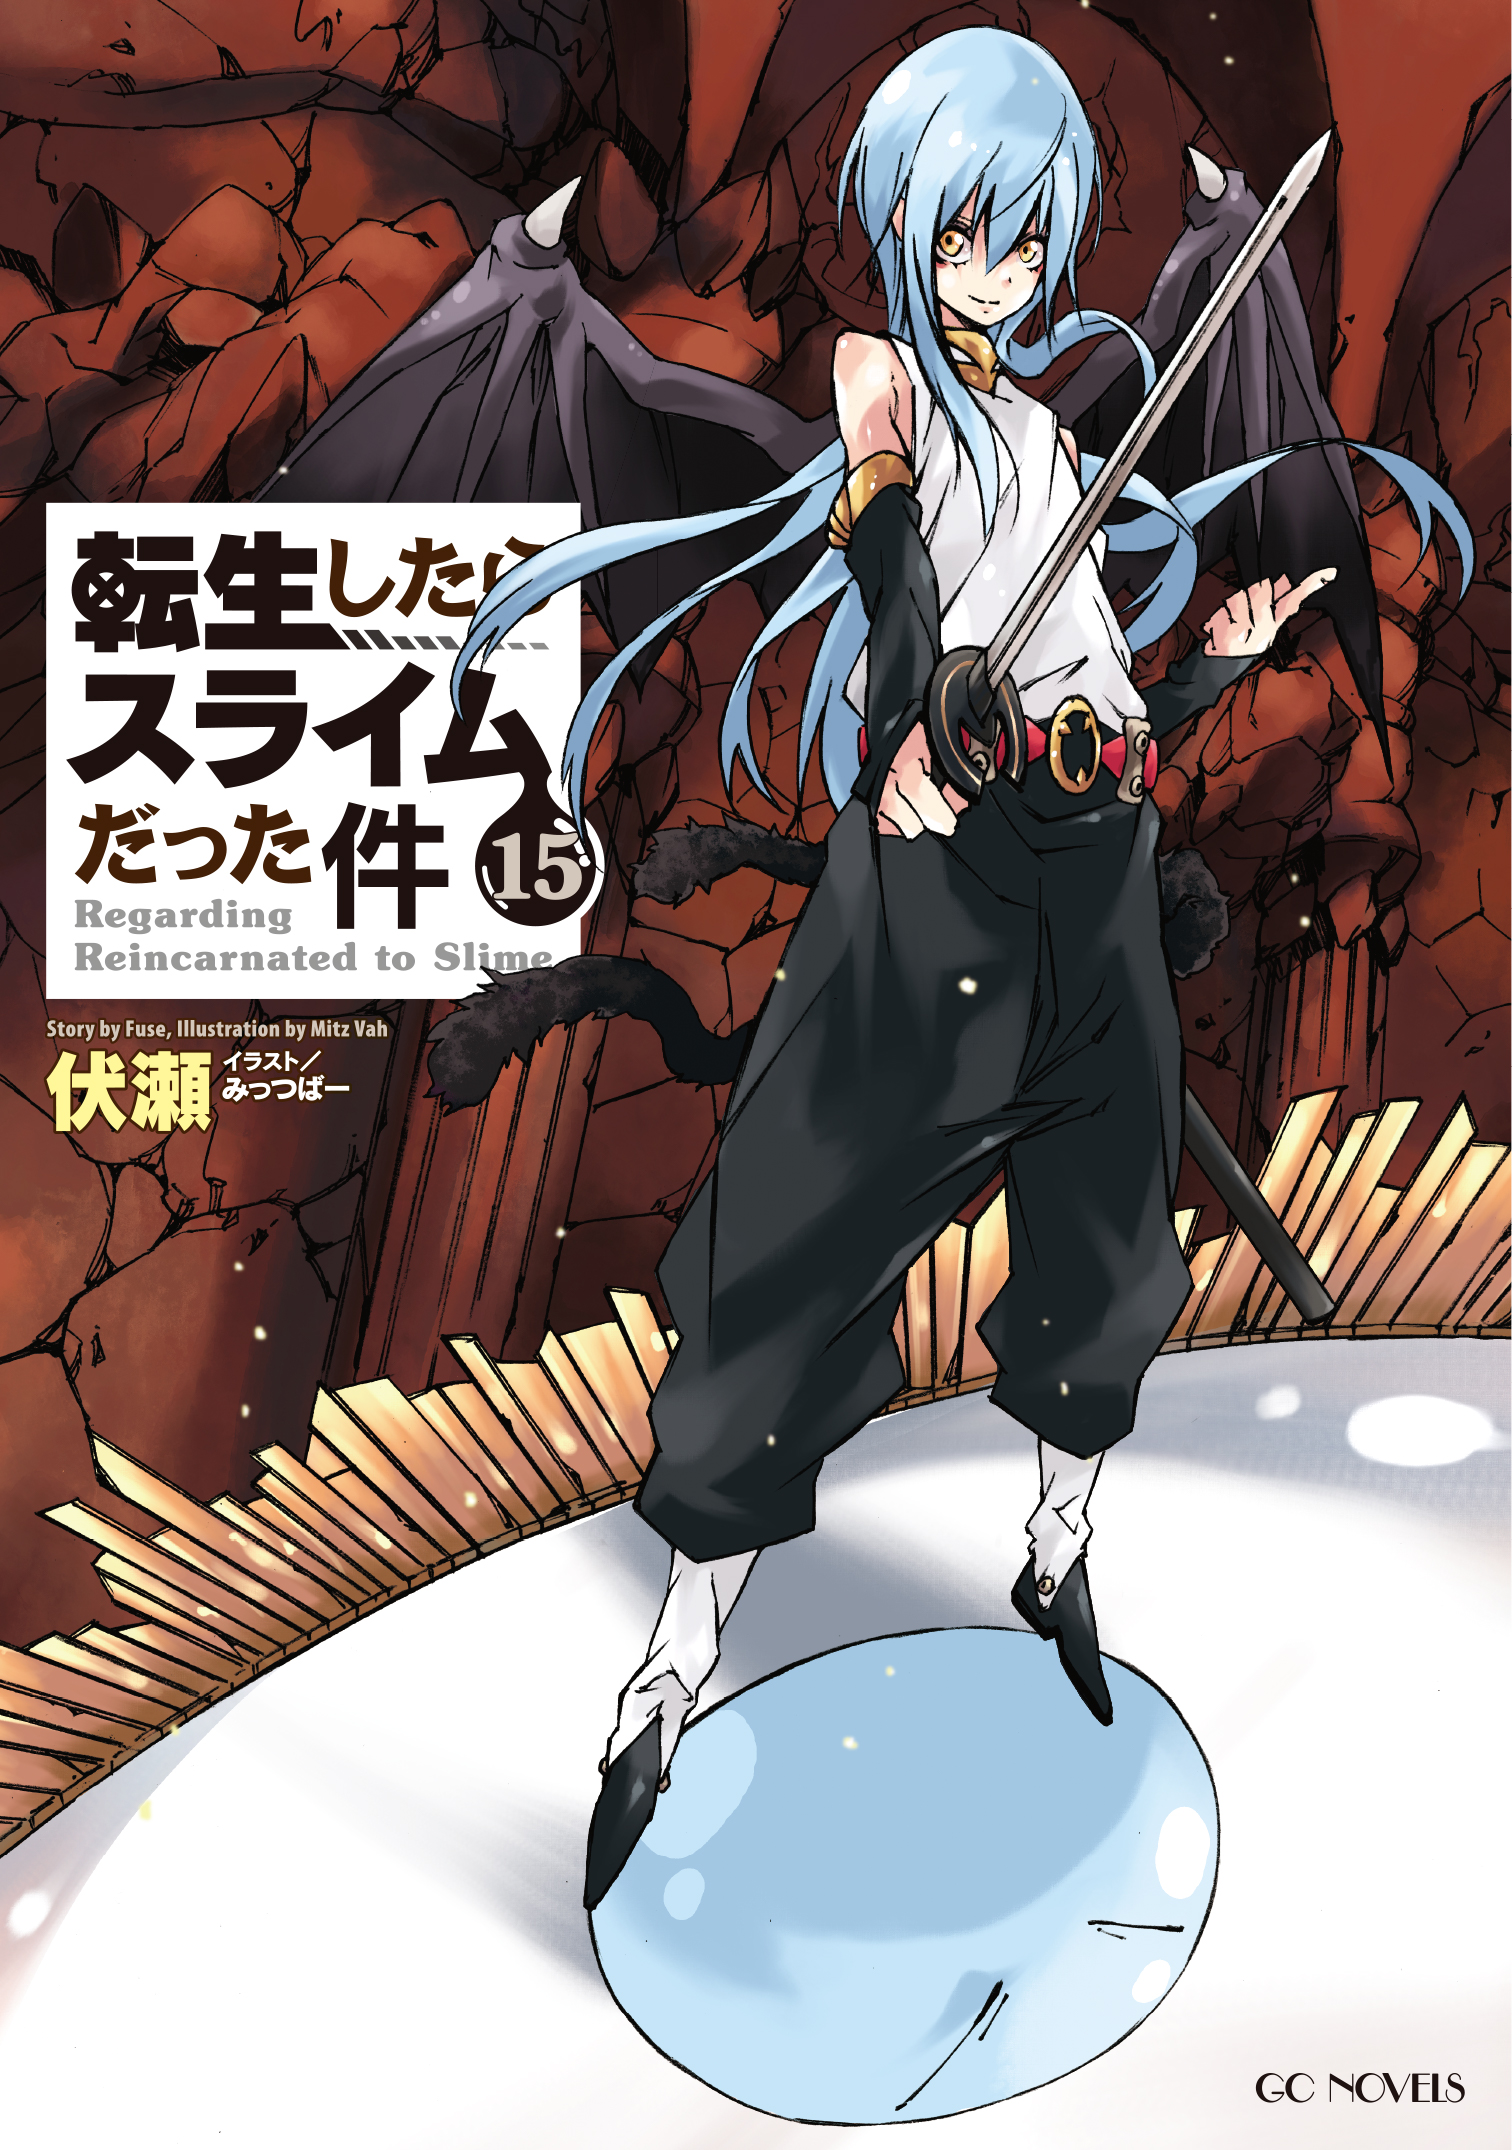 Tensei shitara slime datta ken  Anime art, Character design animation,  Character art